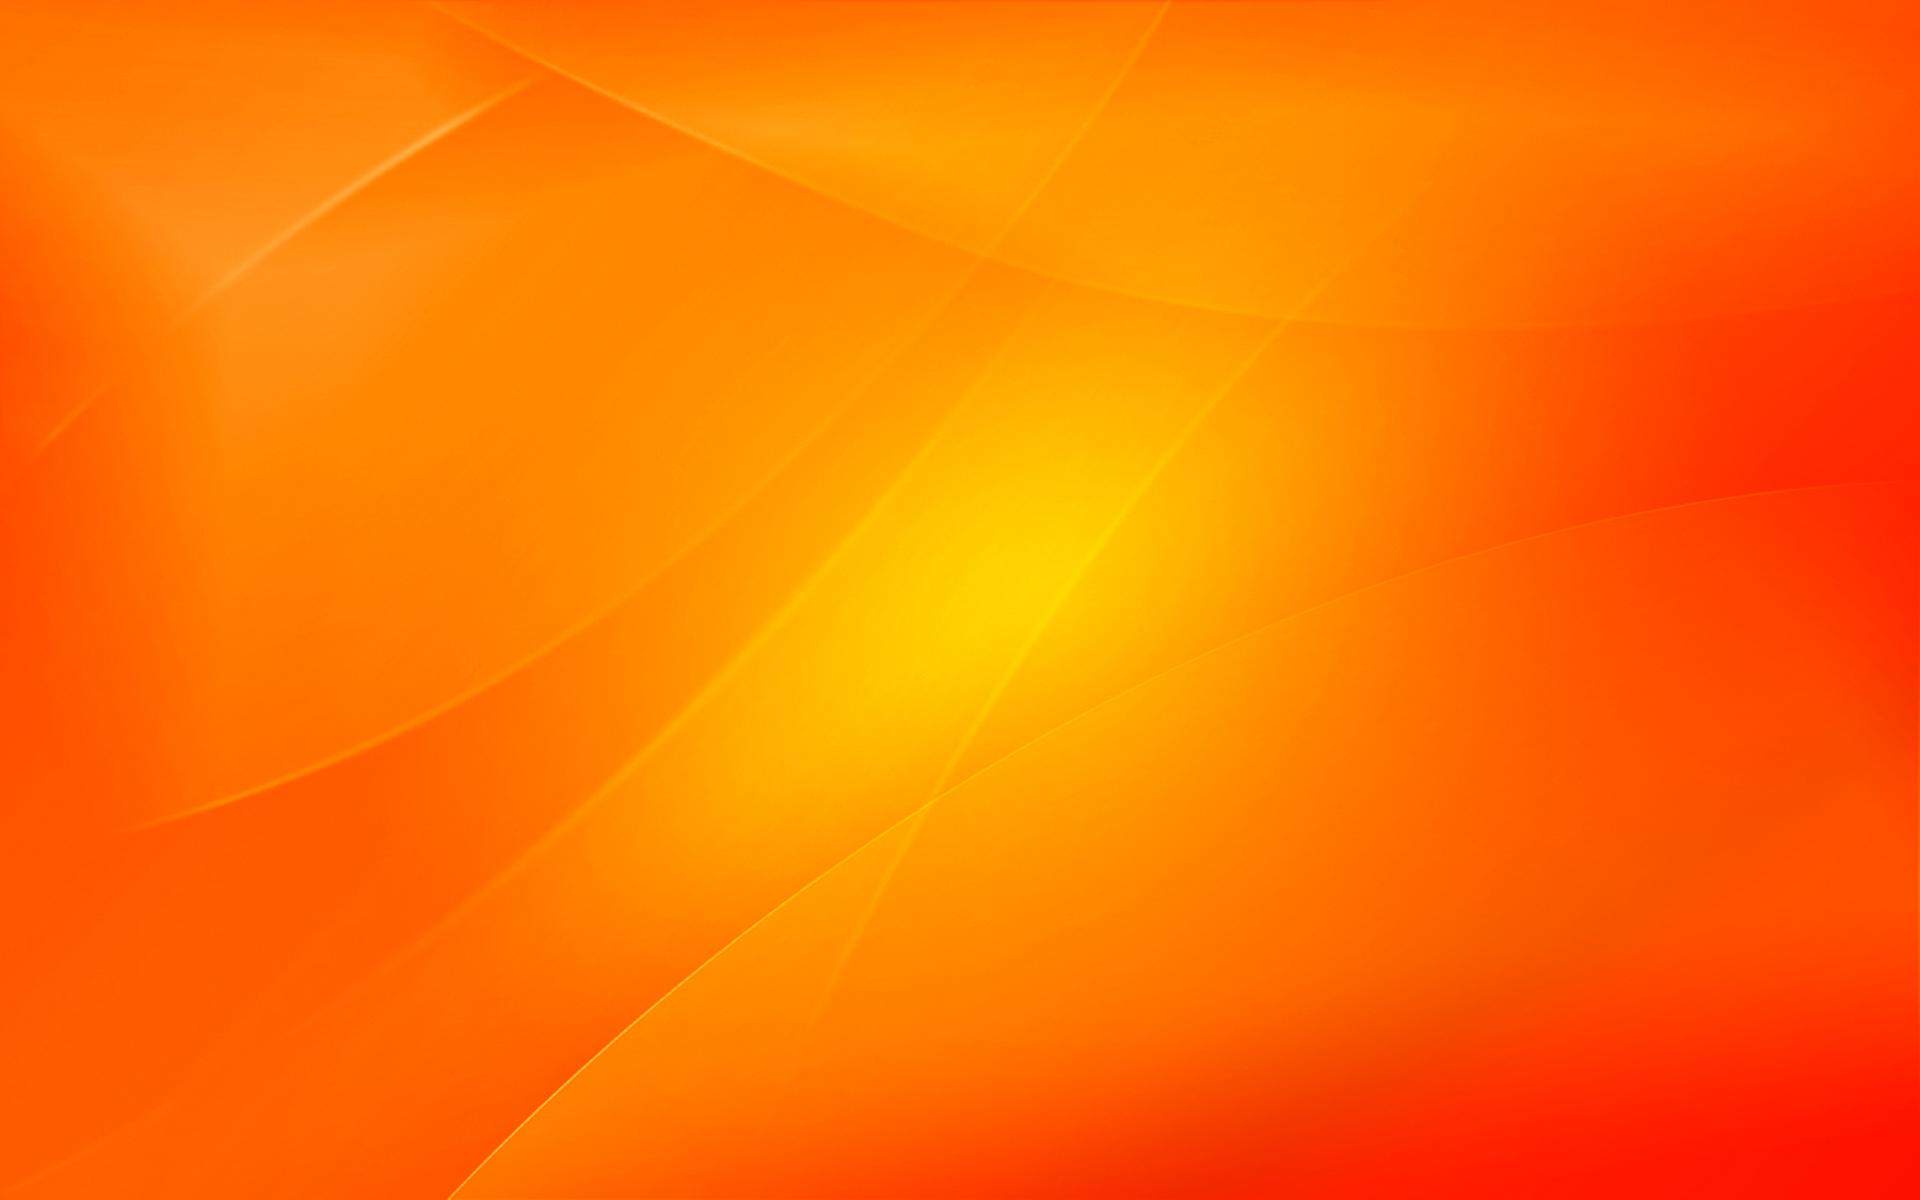 1512-orange-background-wallpaper-1920x1200.jpg